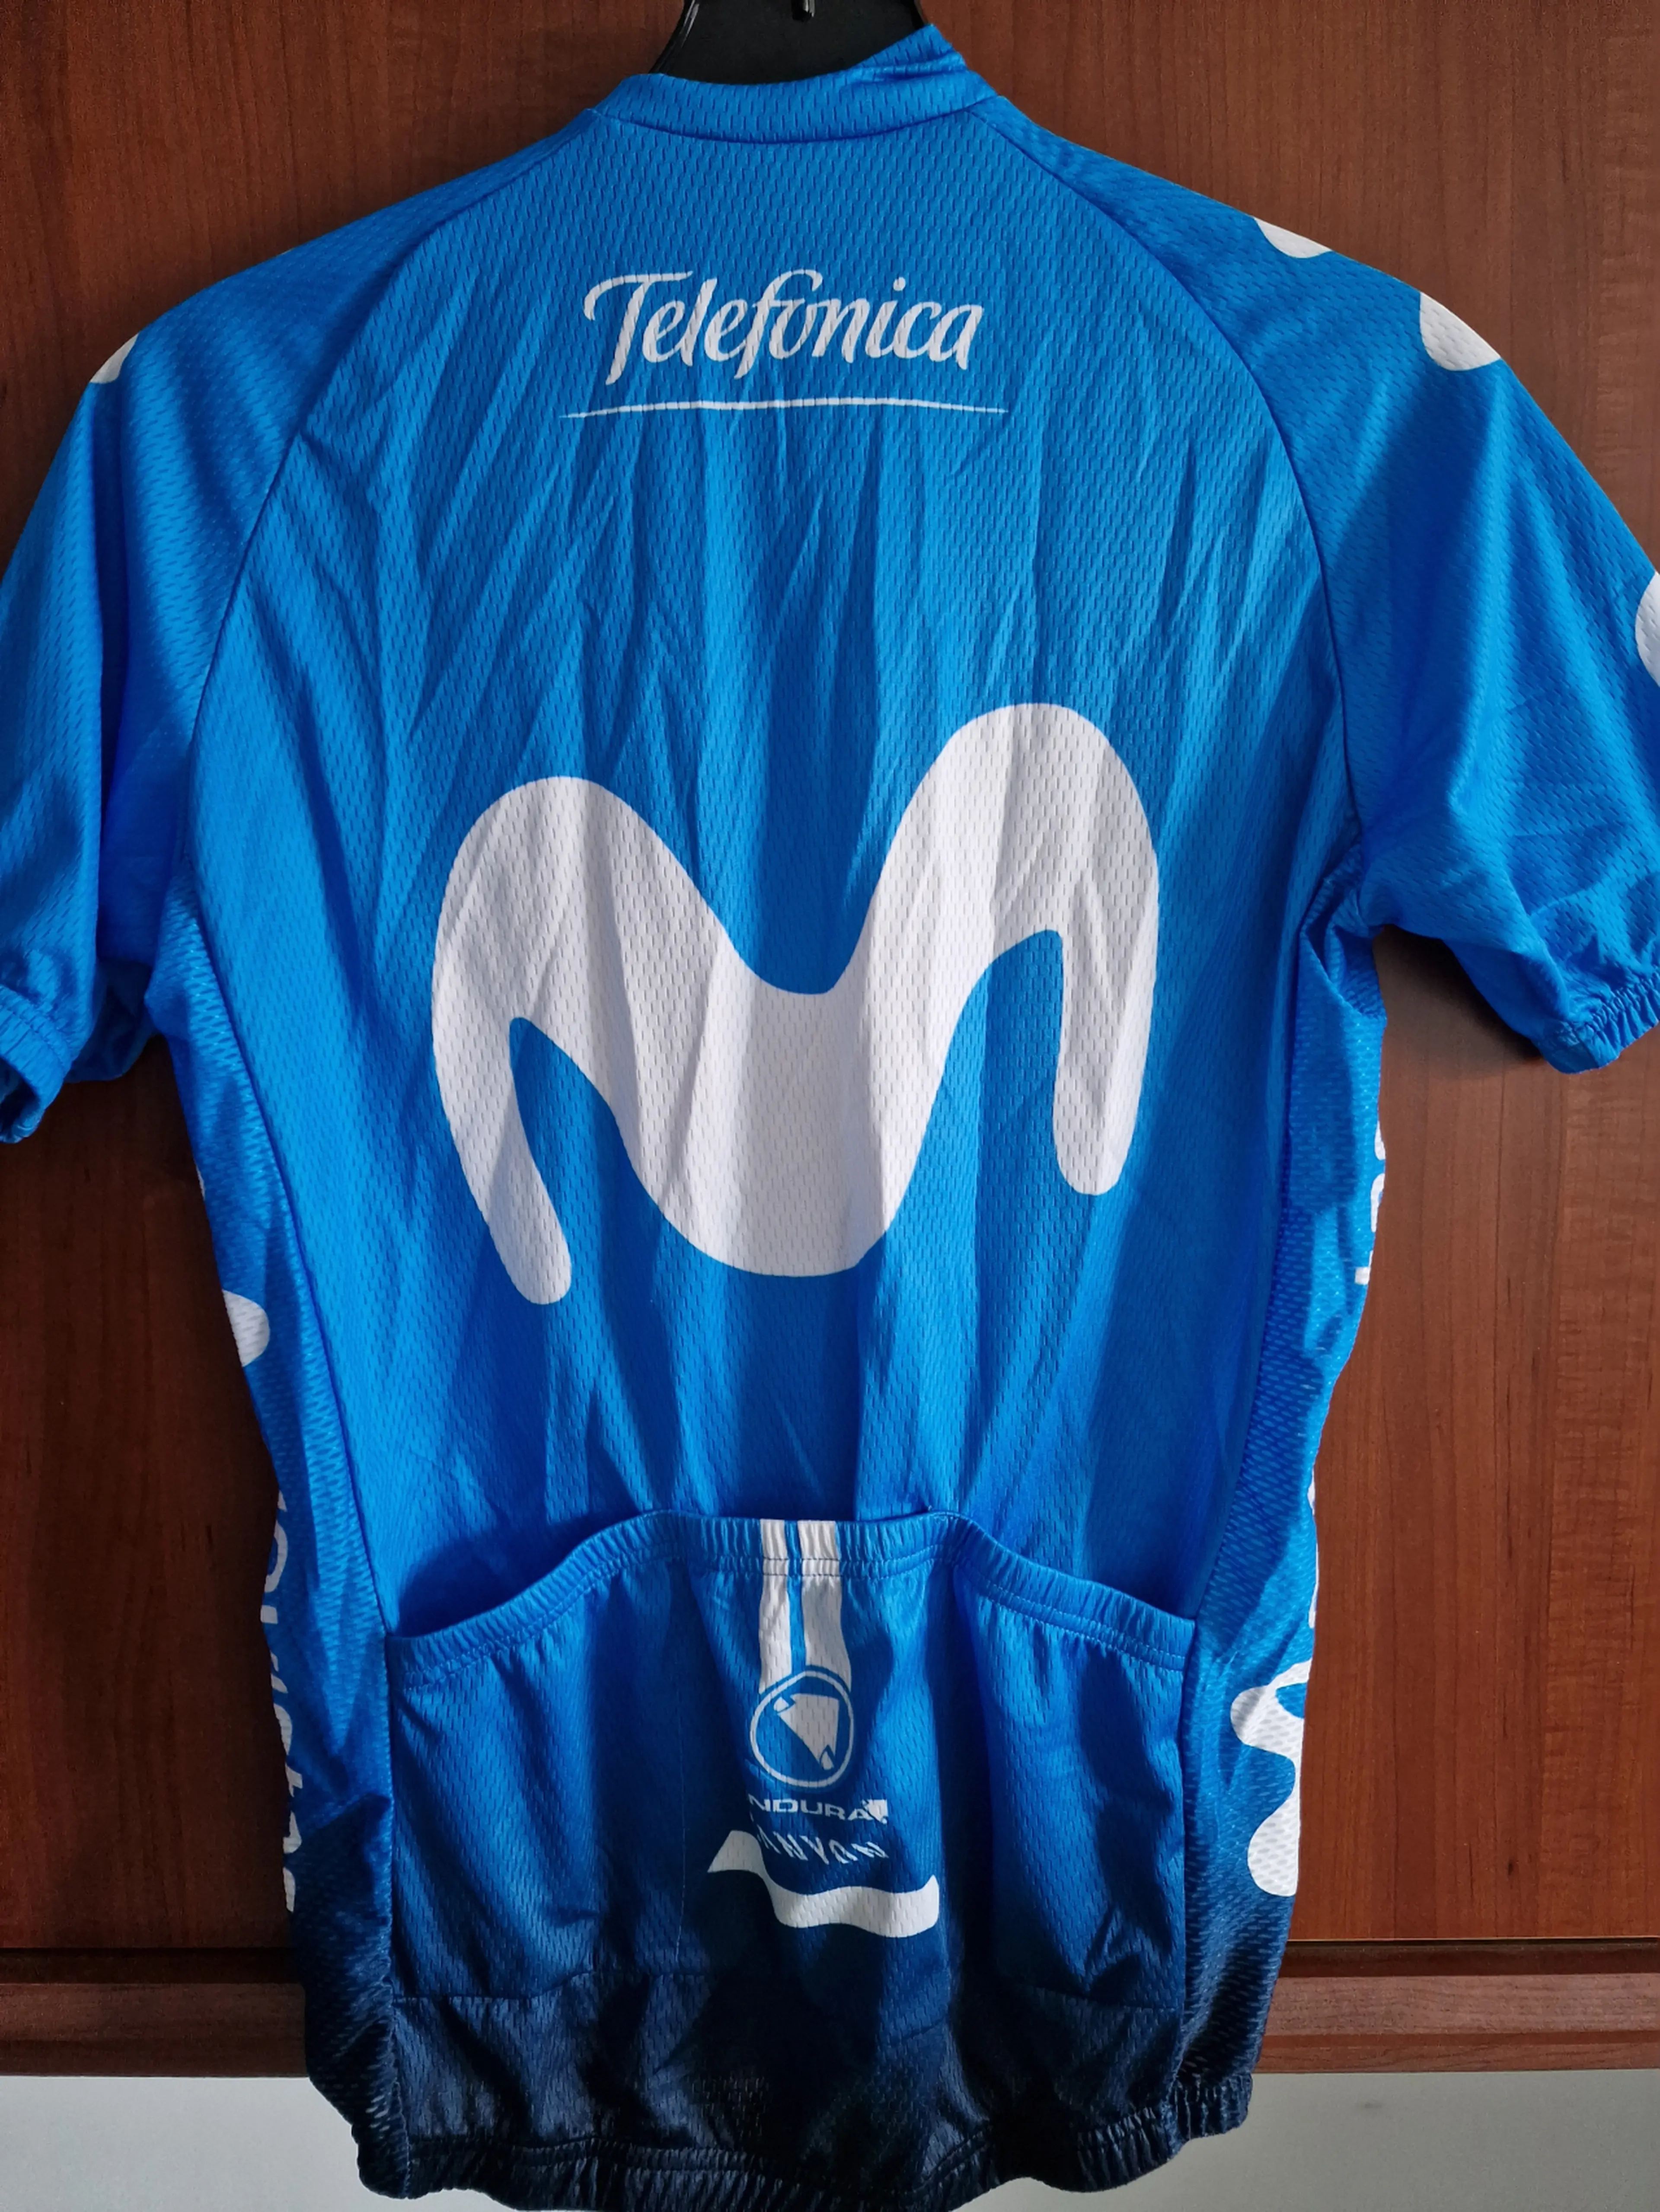 2. Tricou / jersey ciclism replica Team Movistar